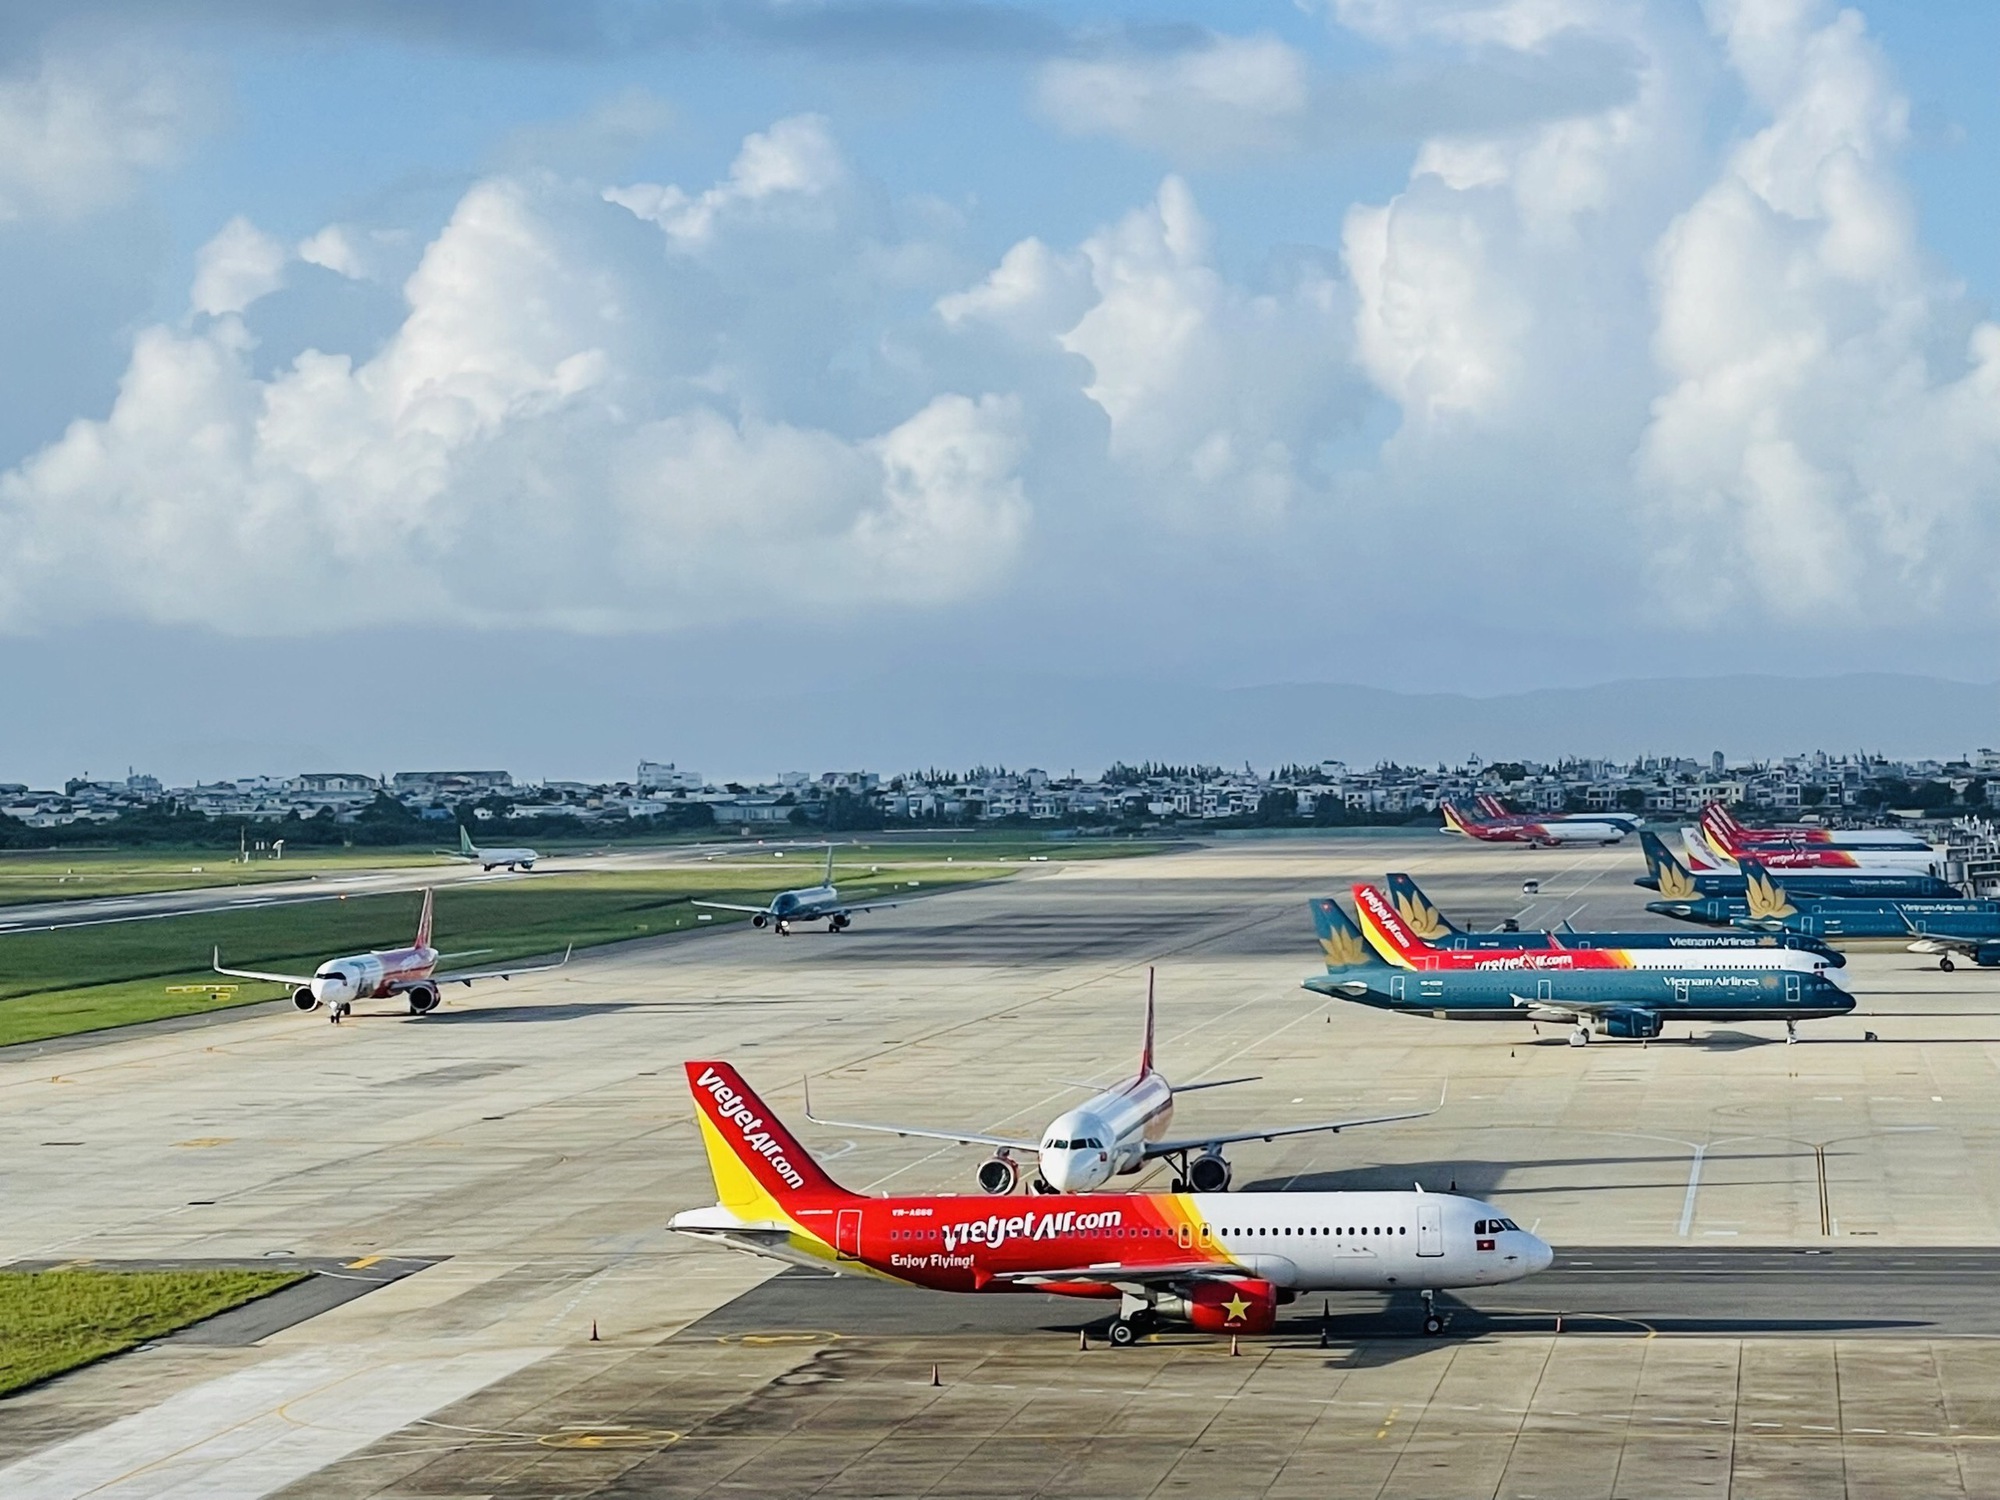 Sân bay Đà Nẵng được vinh danh là Sân bay cải tiến nhất thế giới và Sân bay khu vực tốt nhất châu Á - Ảnh 5.